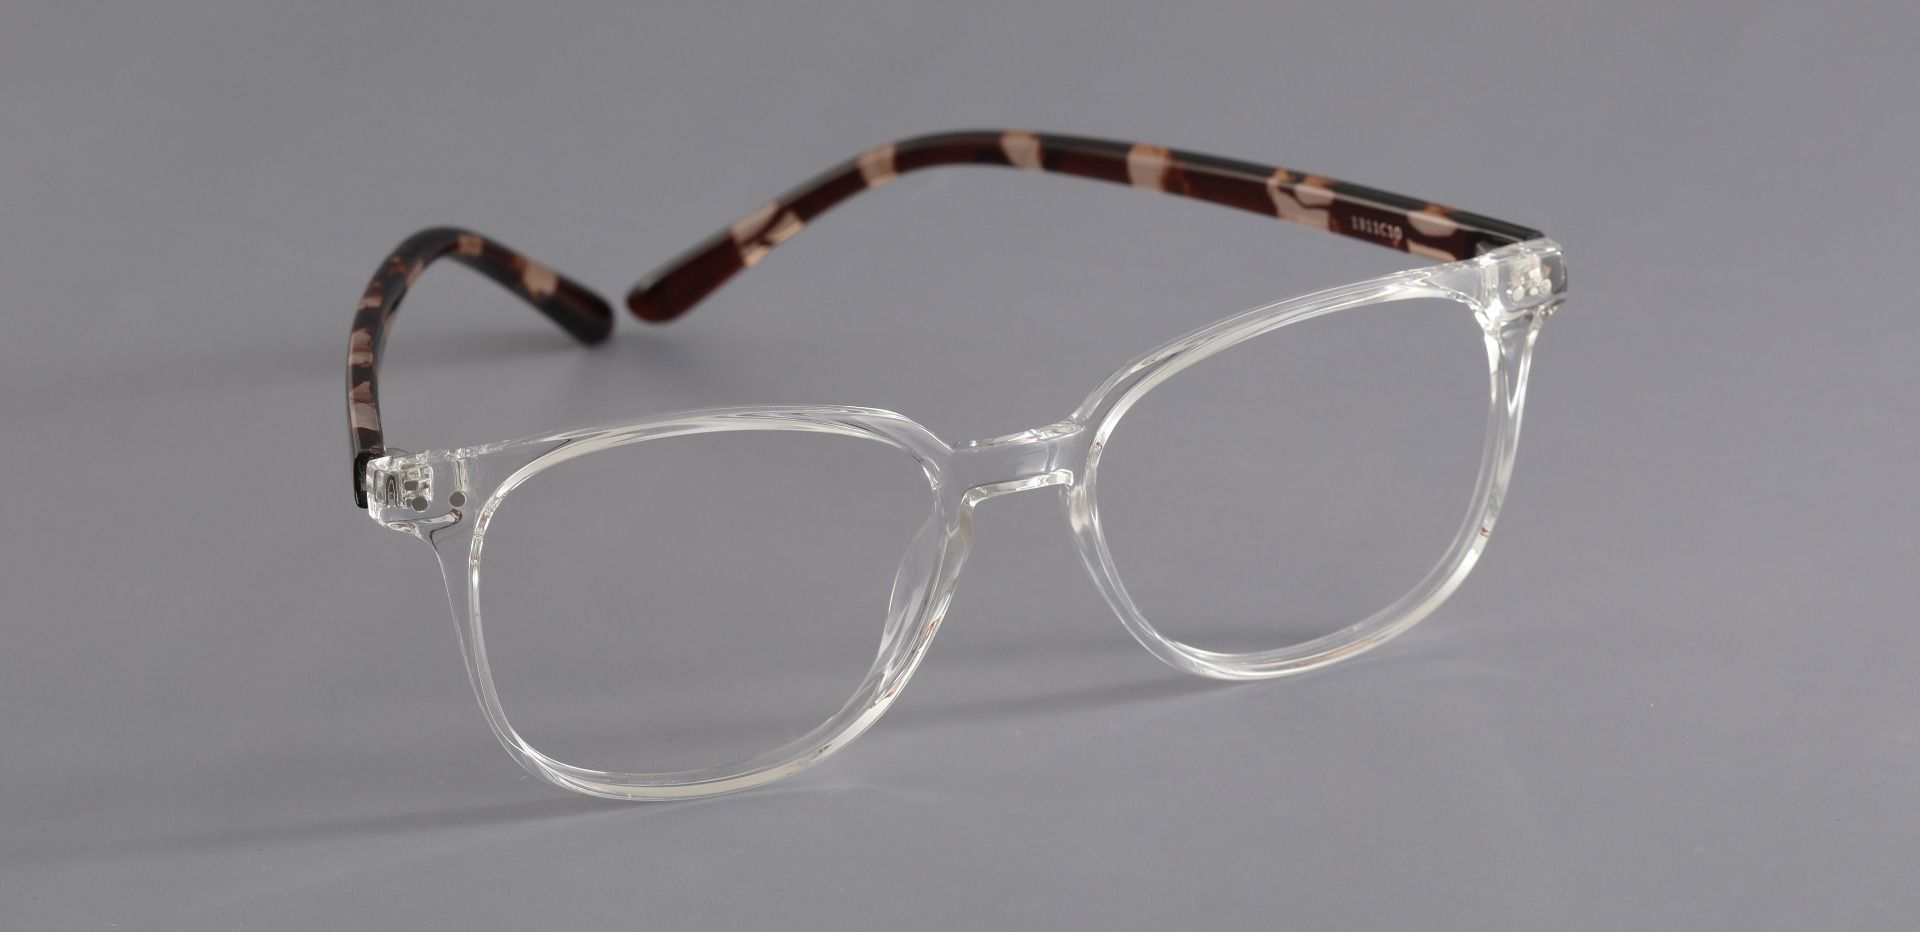 Ravine Oval Prescription Glasses - Clear